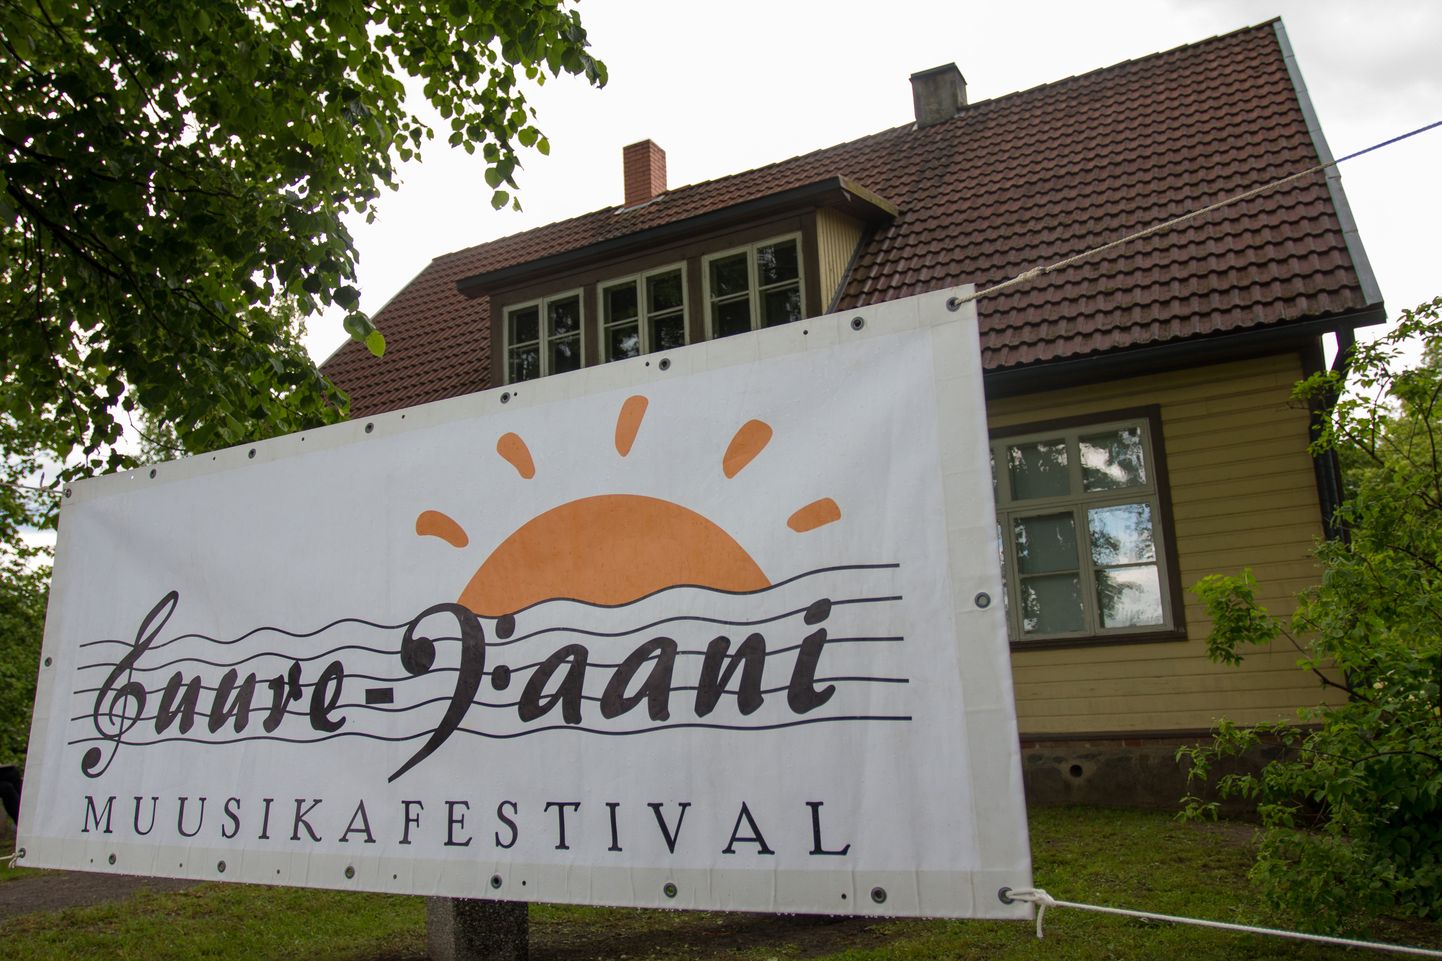 Suure-Jaani muusikafestivali avakontsert heliloojate Kappide muuseumis algab täna kell 17. Esinevad viiuldaja Mari-Liis Uibo ja pianist Ralf Taal. Kontsert on tasuta.